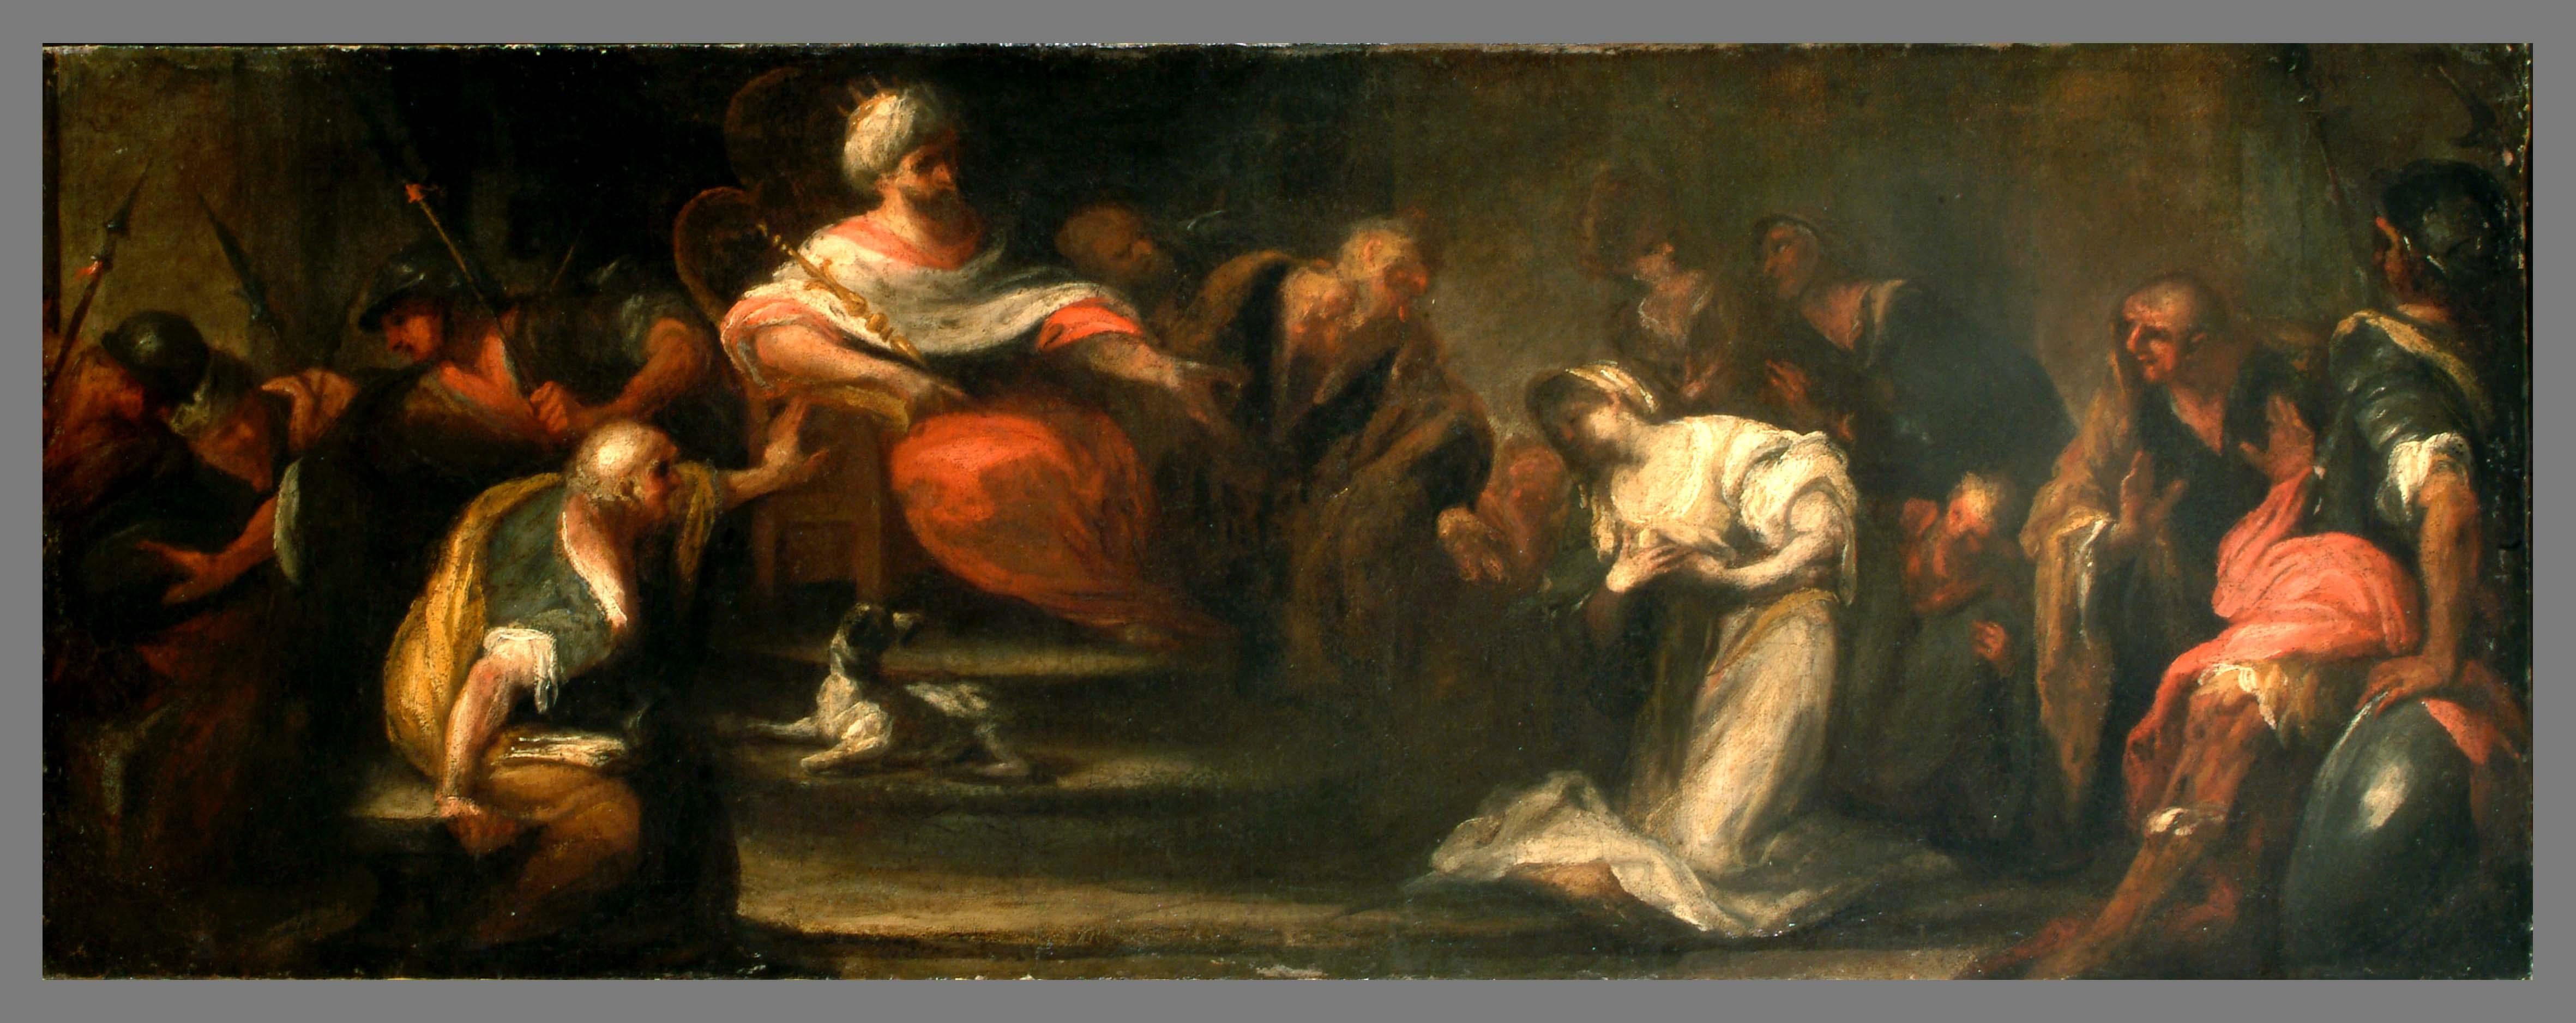 Esther und Ahasuerus, Ölgemälde auf Leinwand, 18. Jahrhundert